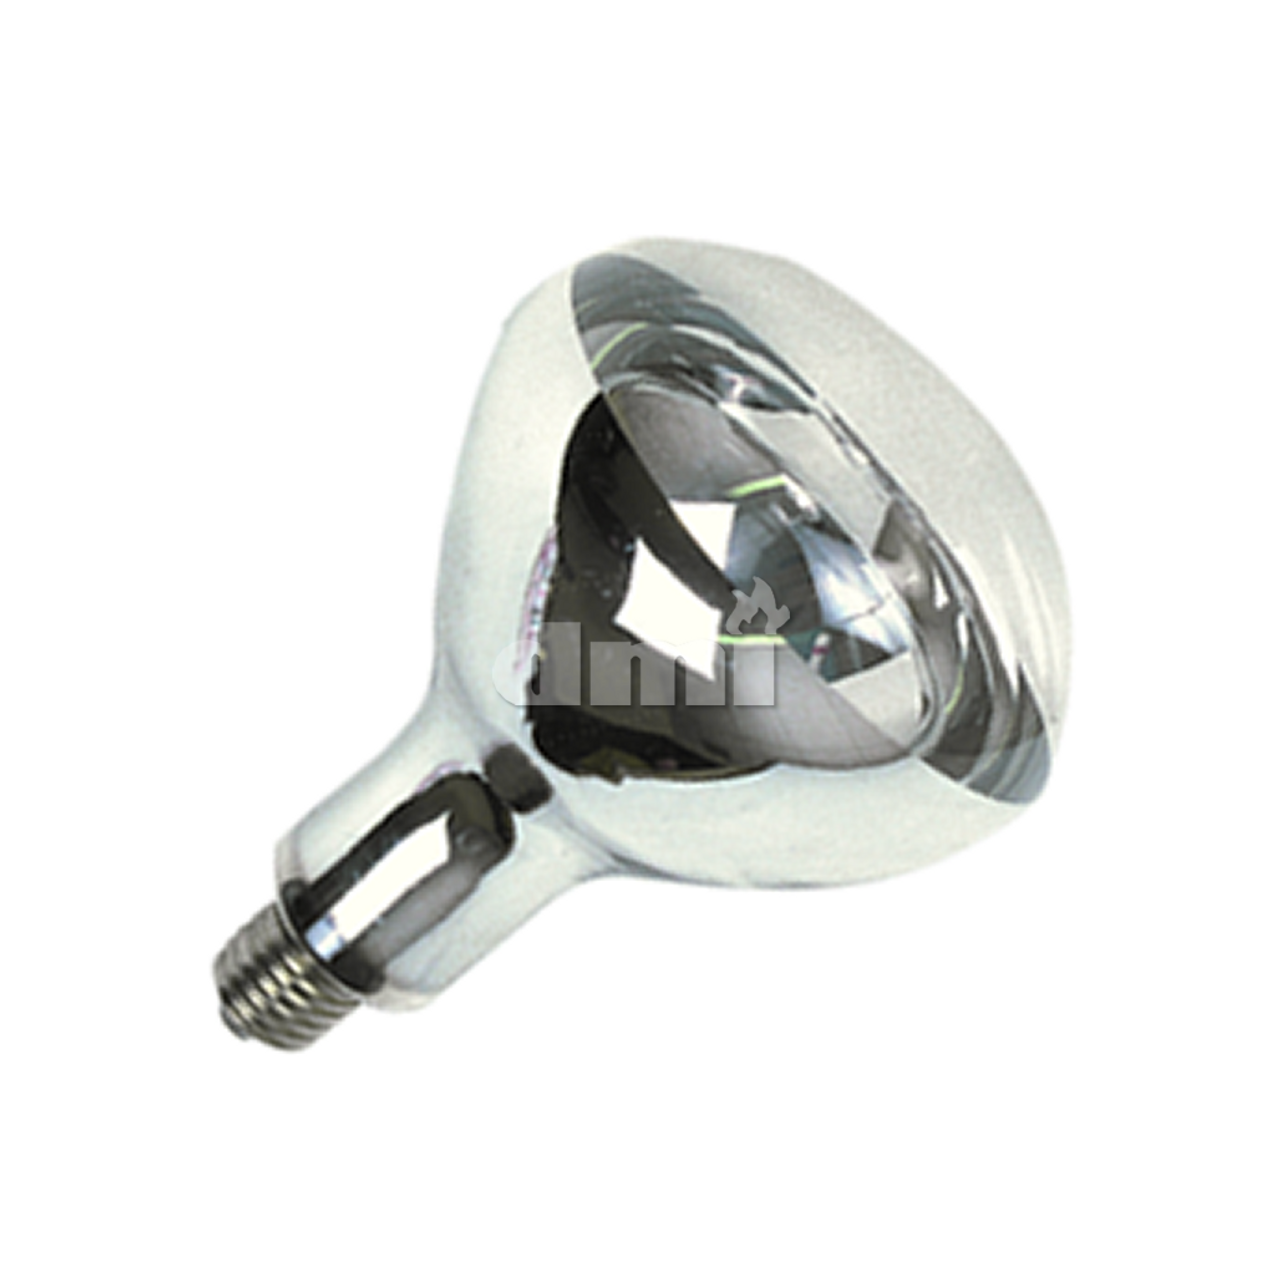 8395C-06  125W Clear Coated Heat Lamp, 120V, 6-Pack